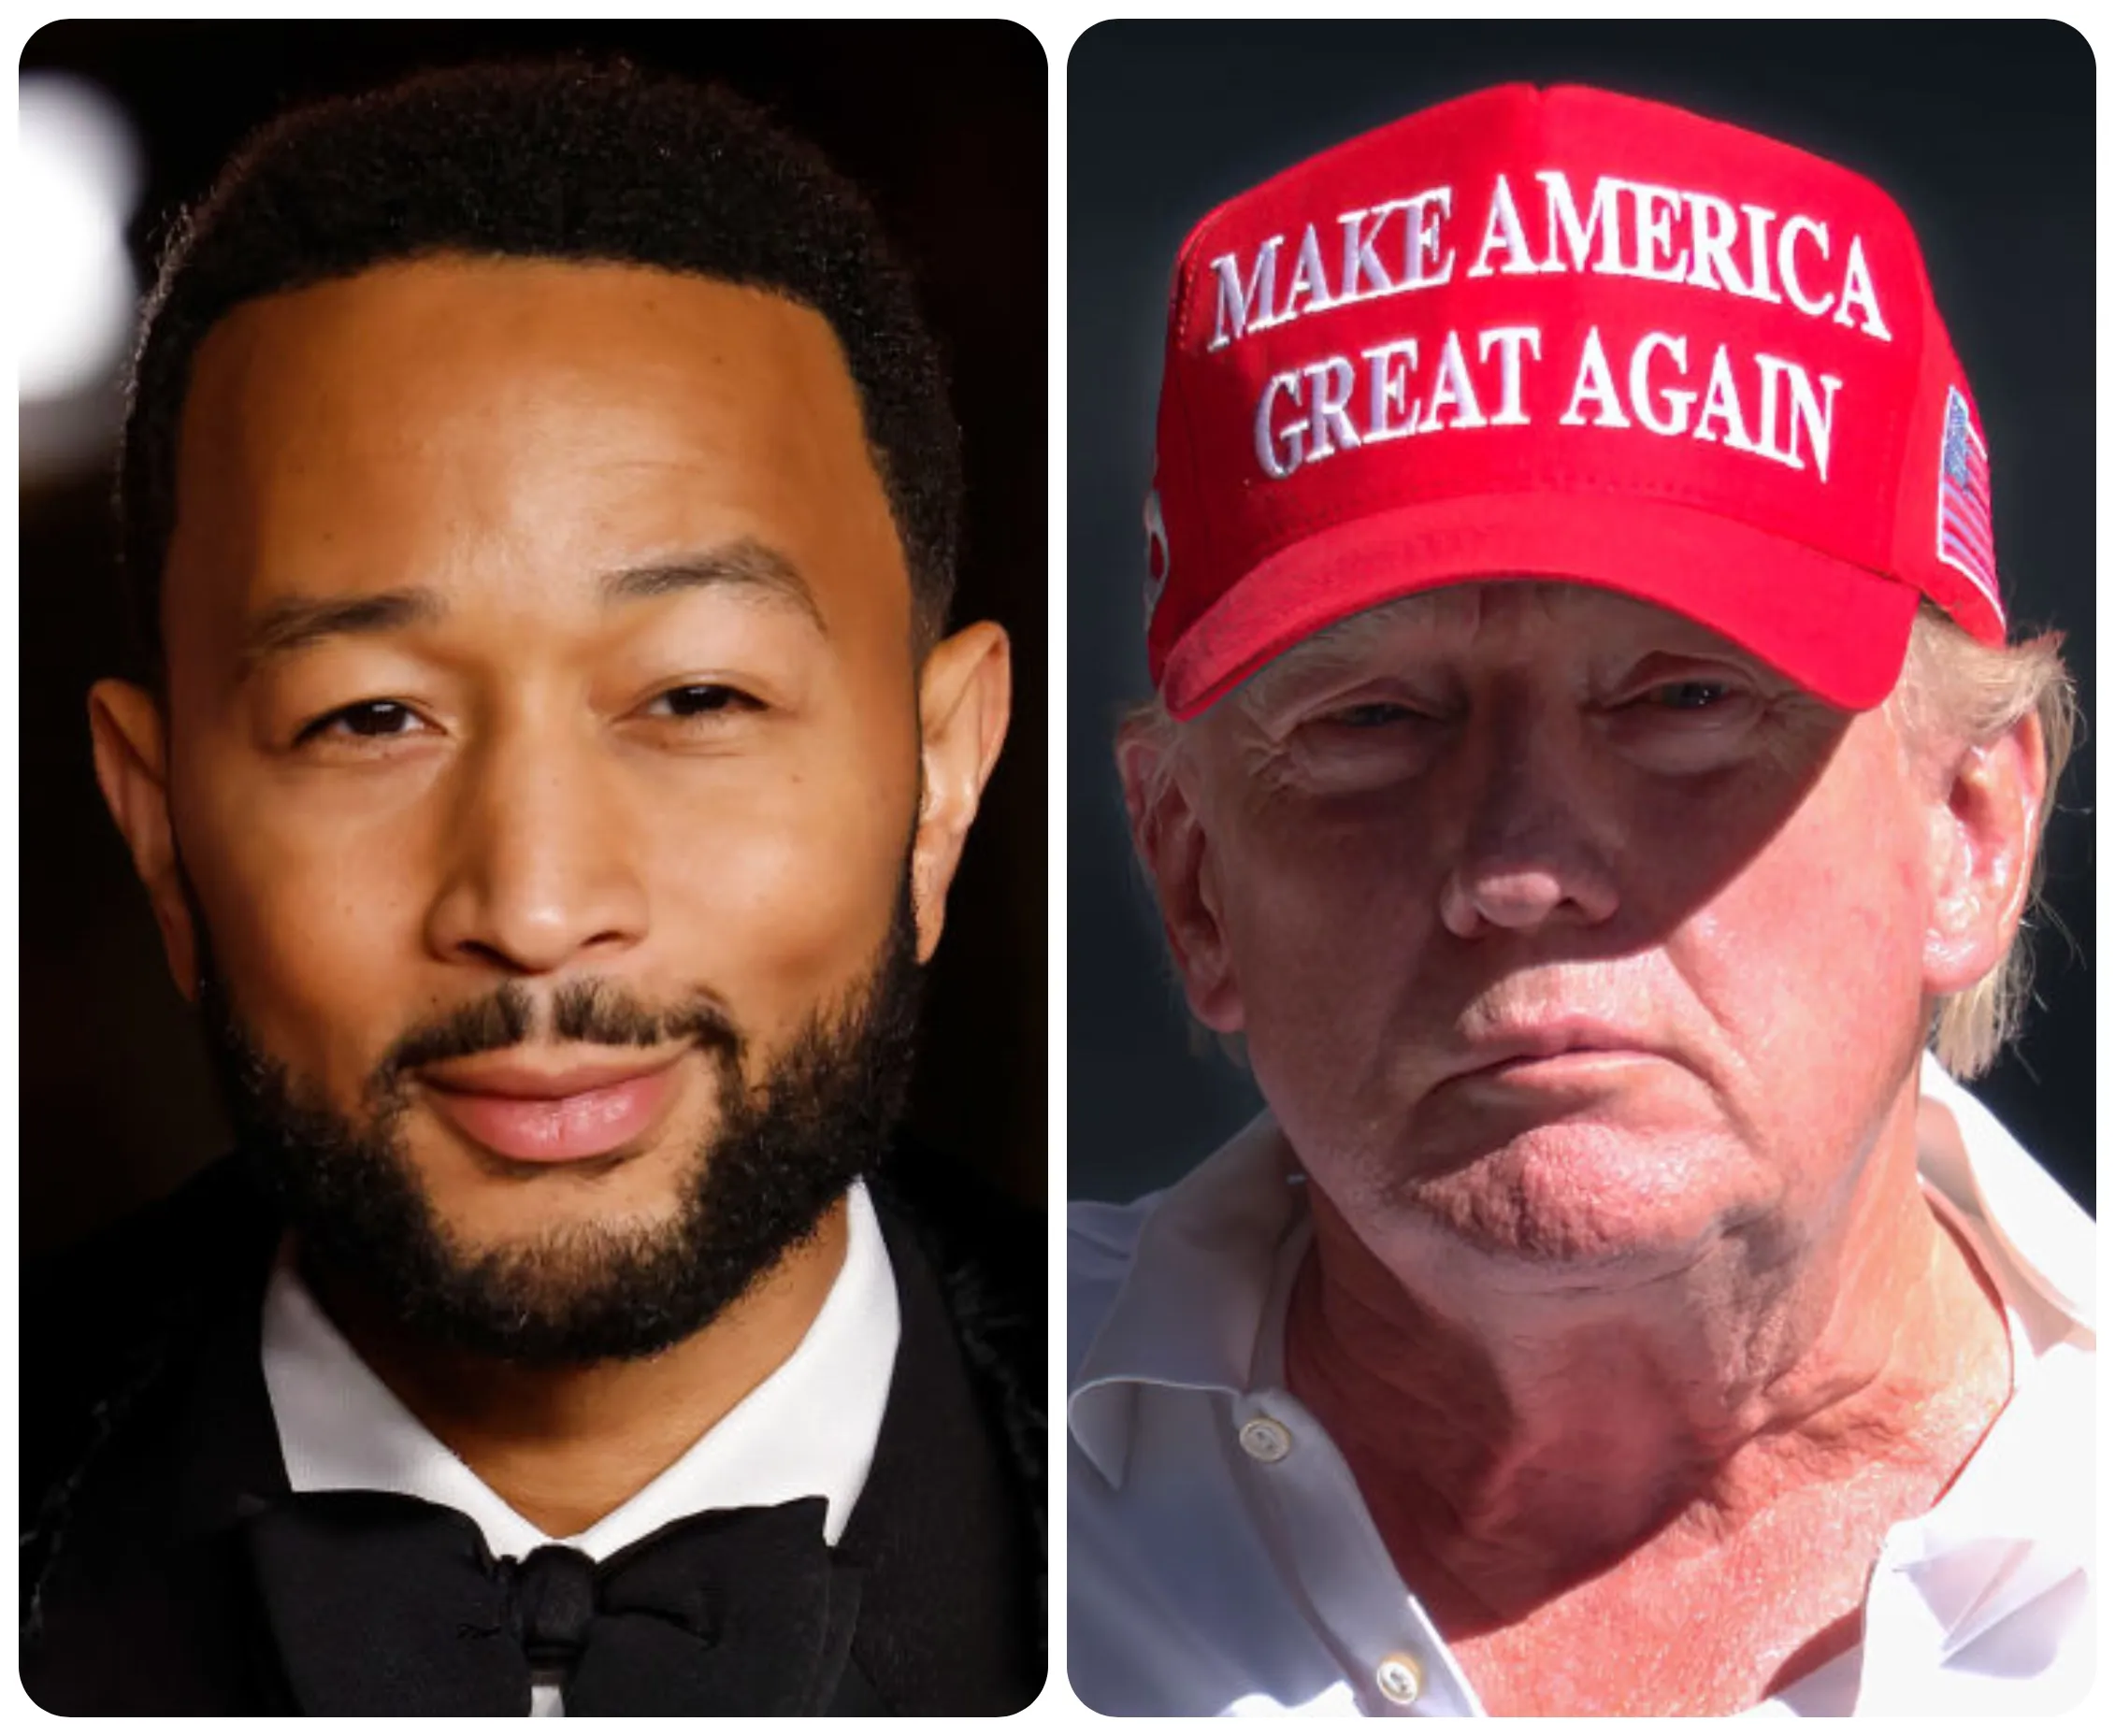 &Quot;Donald Trump Croit Que Les Noirs Sont Inférieurs&Quot;, John Legend Tacle L'Ancien Président (Video)